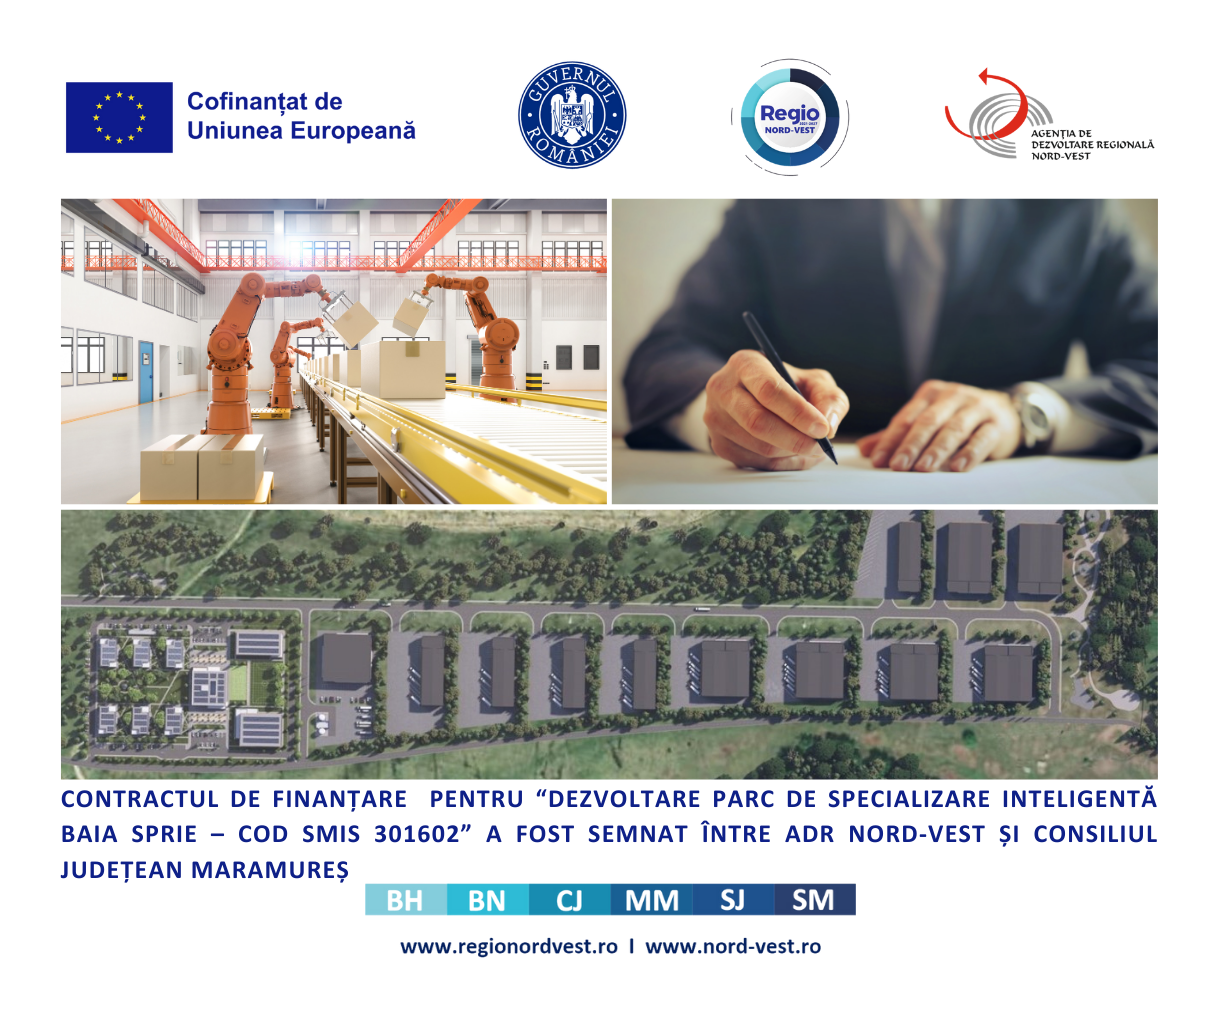 Consiliul Județean Maramureș a semnat contractul pentru dezvoltarea unui Parc de Specializare Inteligentă în orașul Baia Sprie